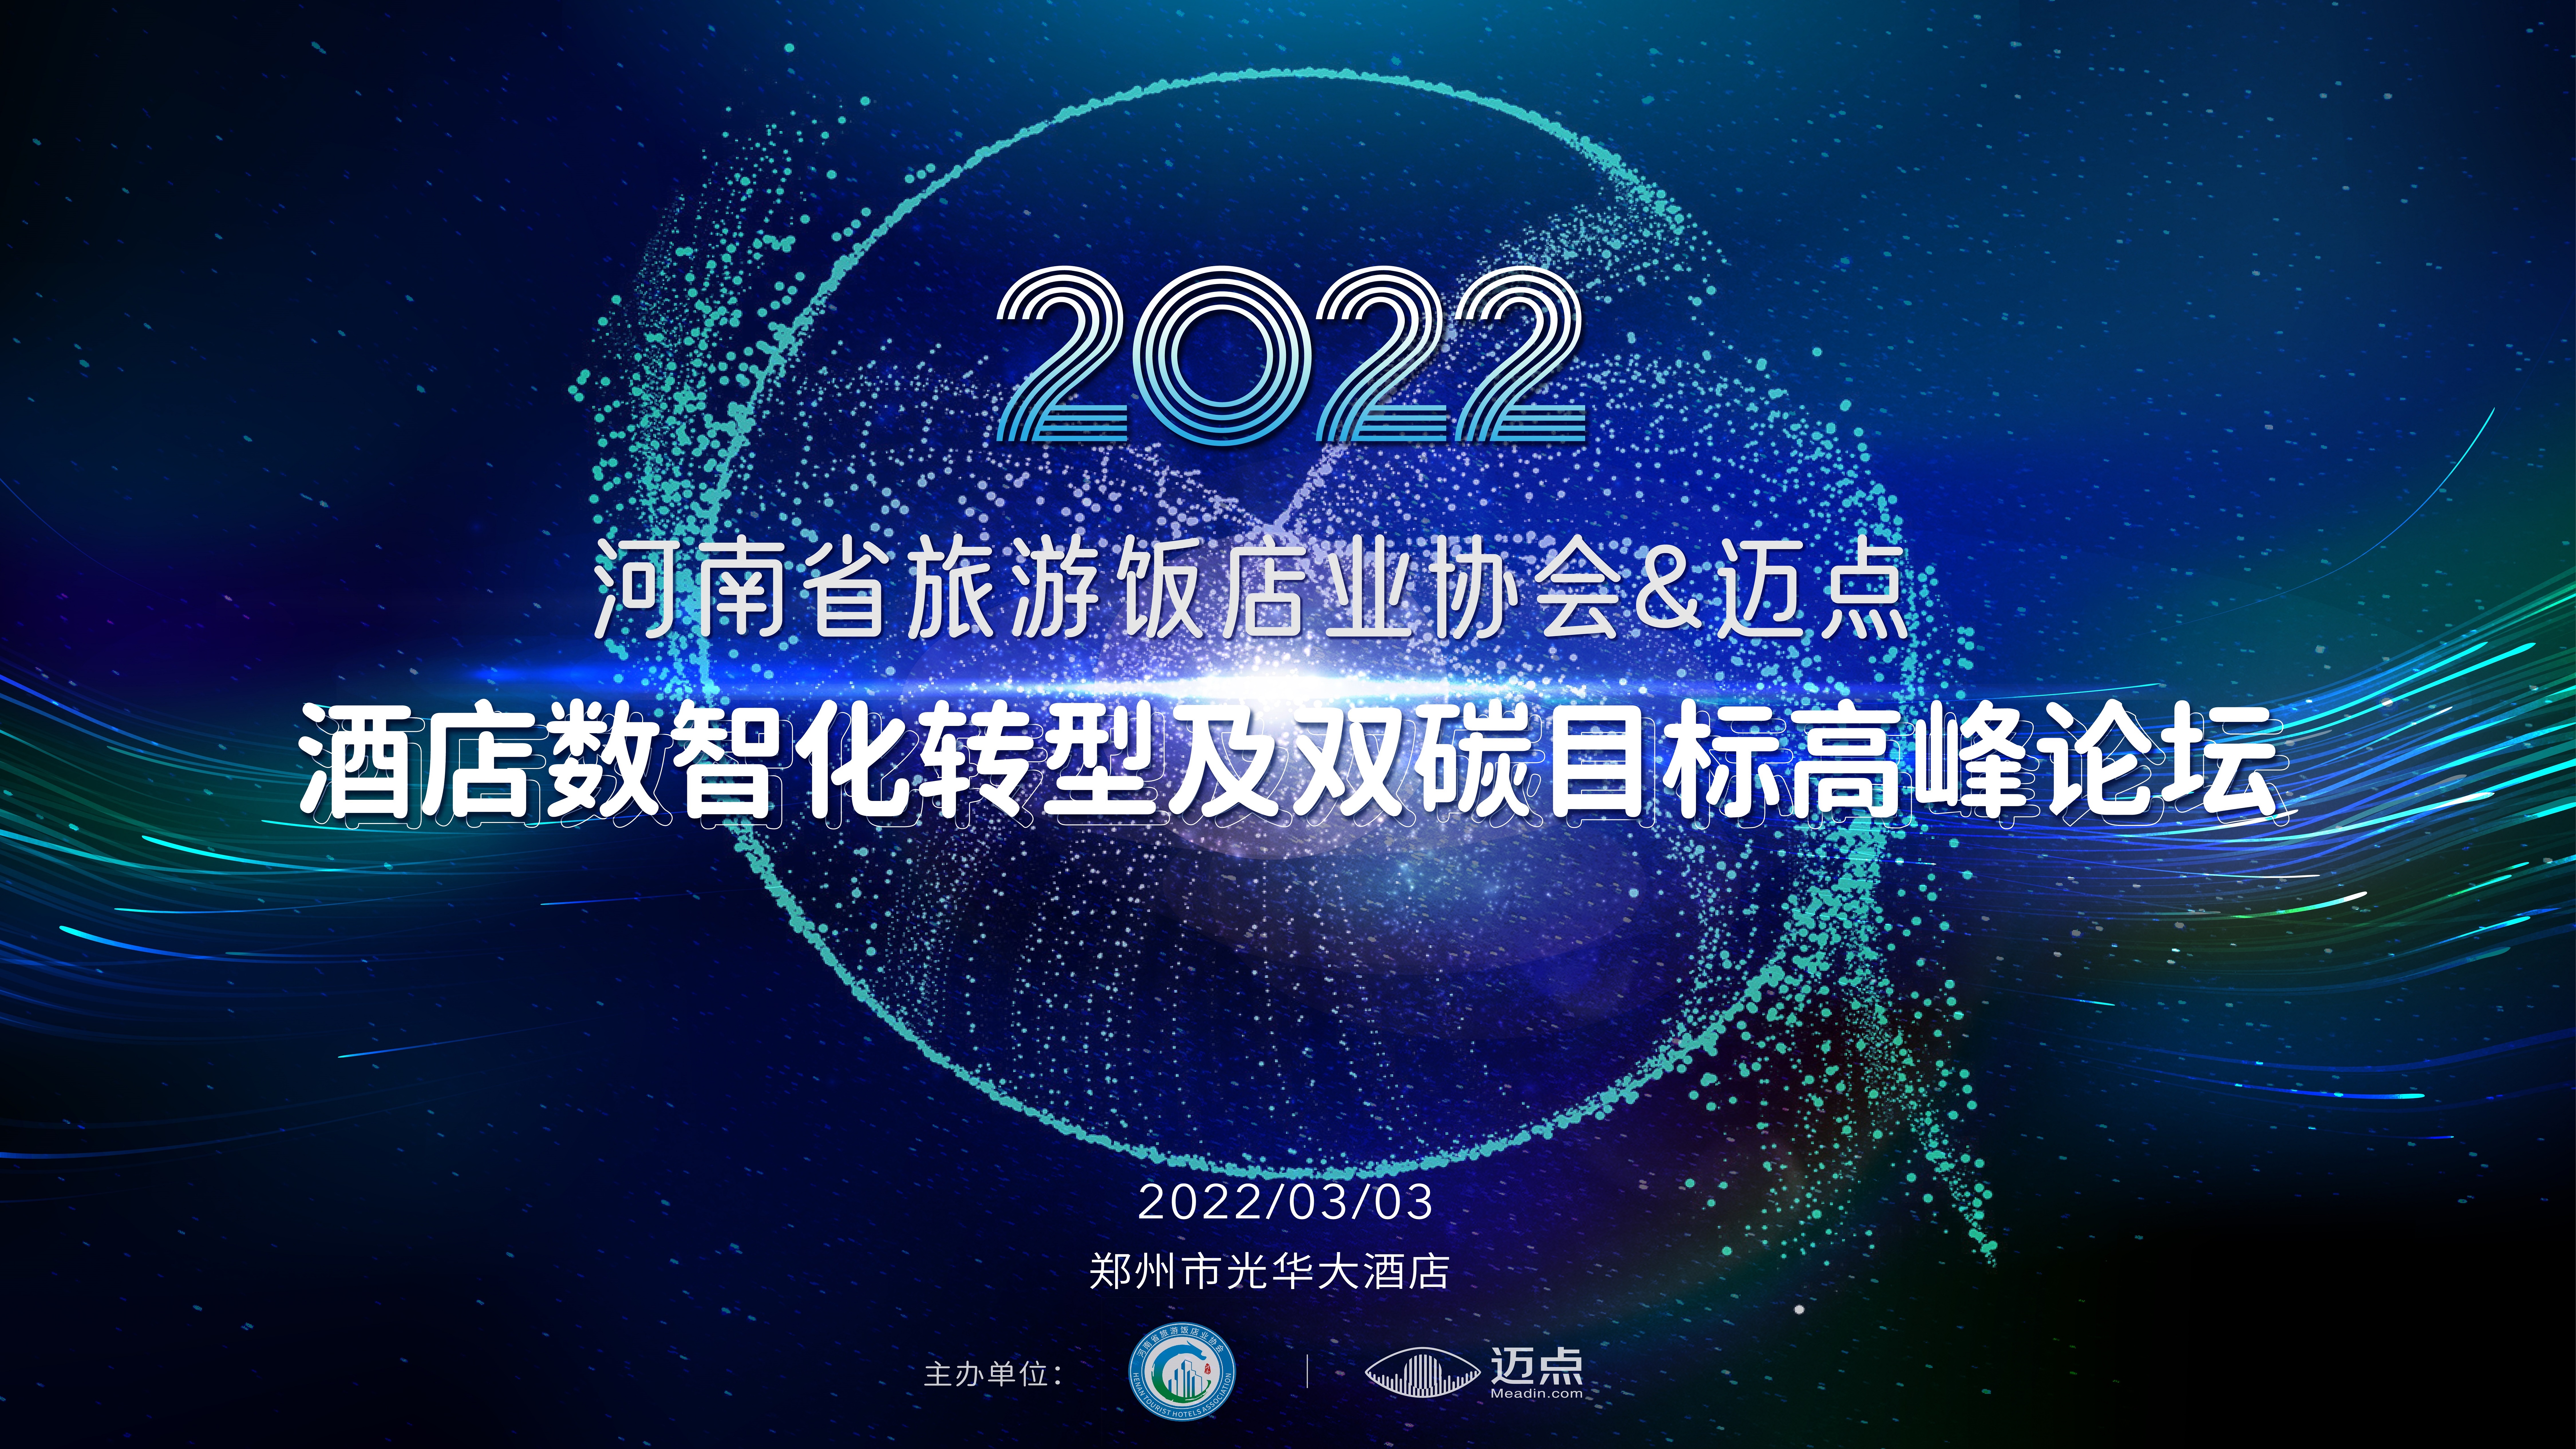 河南省旅游饭店业协会&迈点2022酒店数智化转型及双碳目标高峰论坛